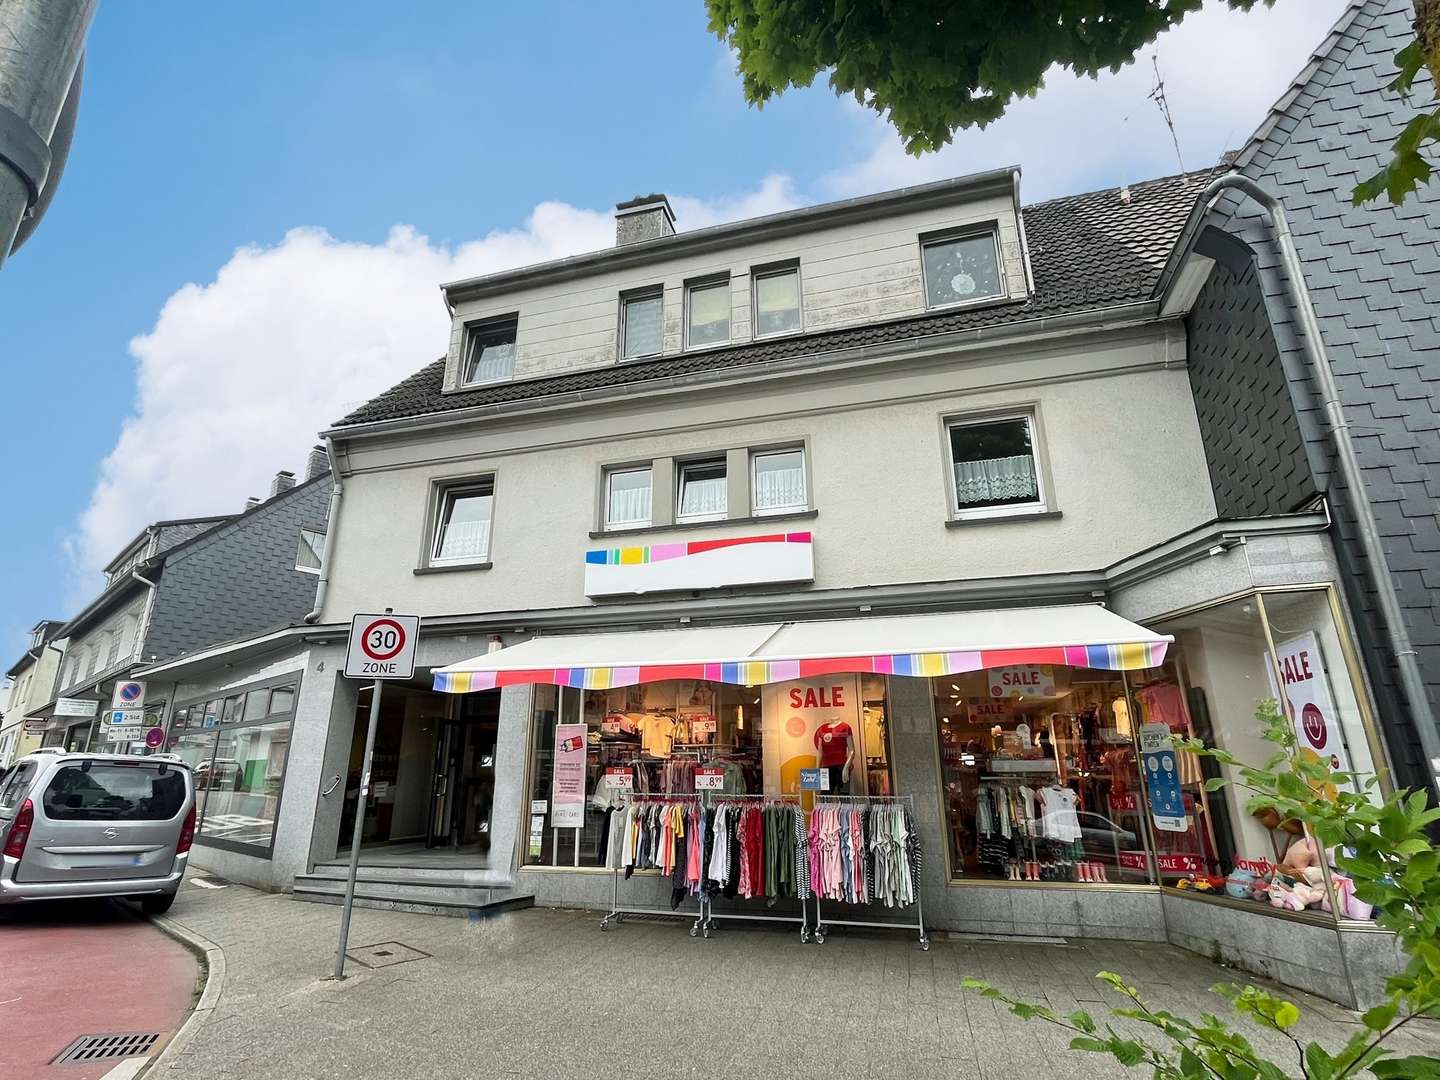 null - Wohn- / Geschäftshaus in 42349 Wuppertal mit 172m² als Kapitalanlage kaufen